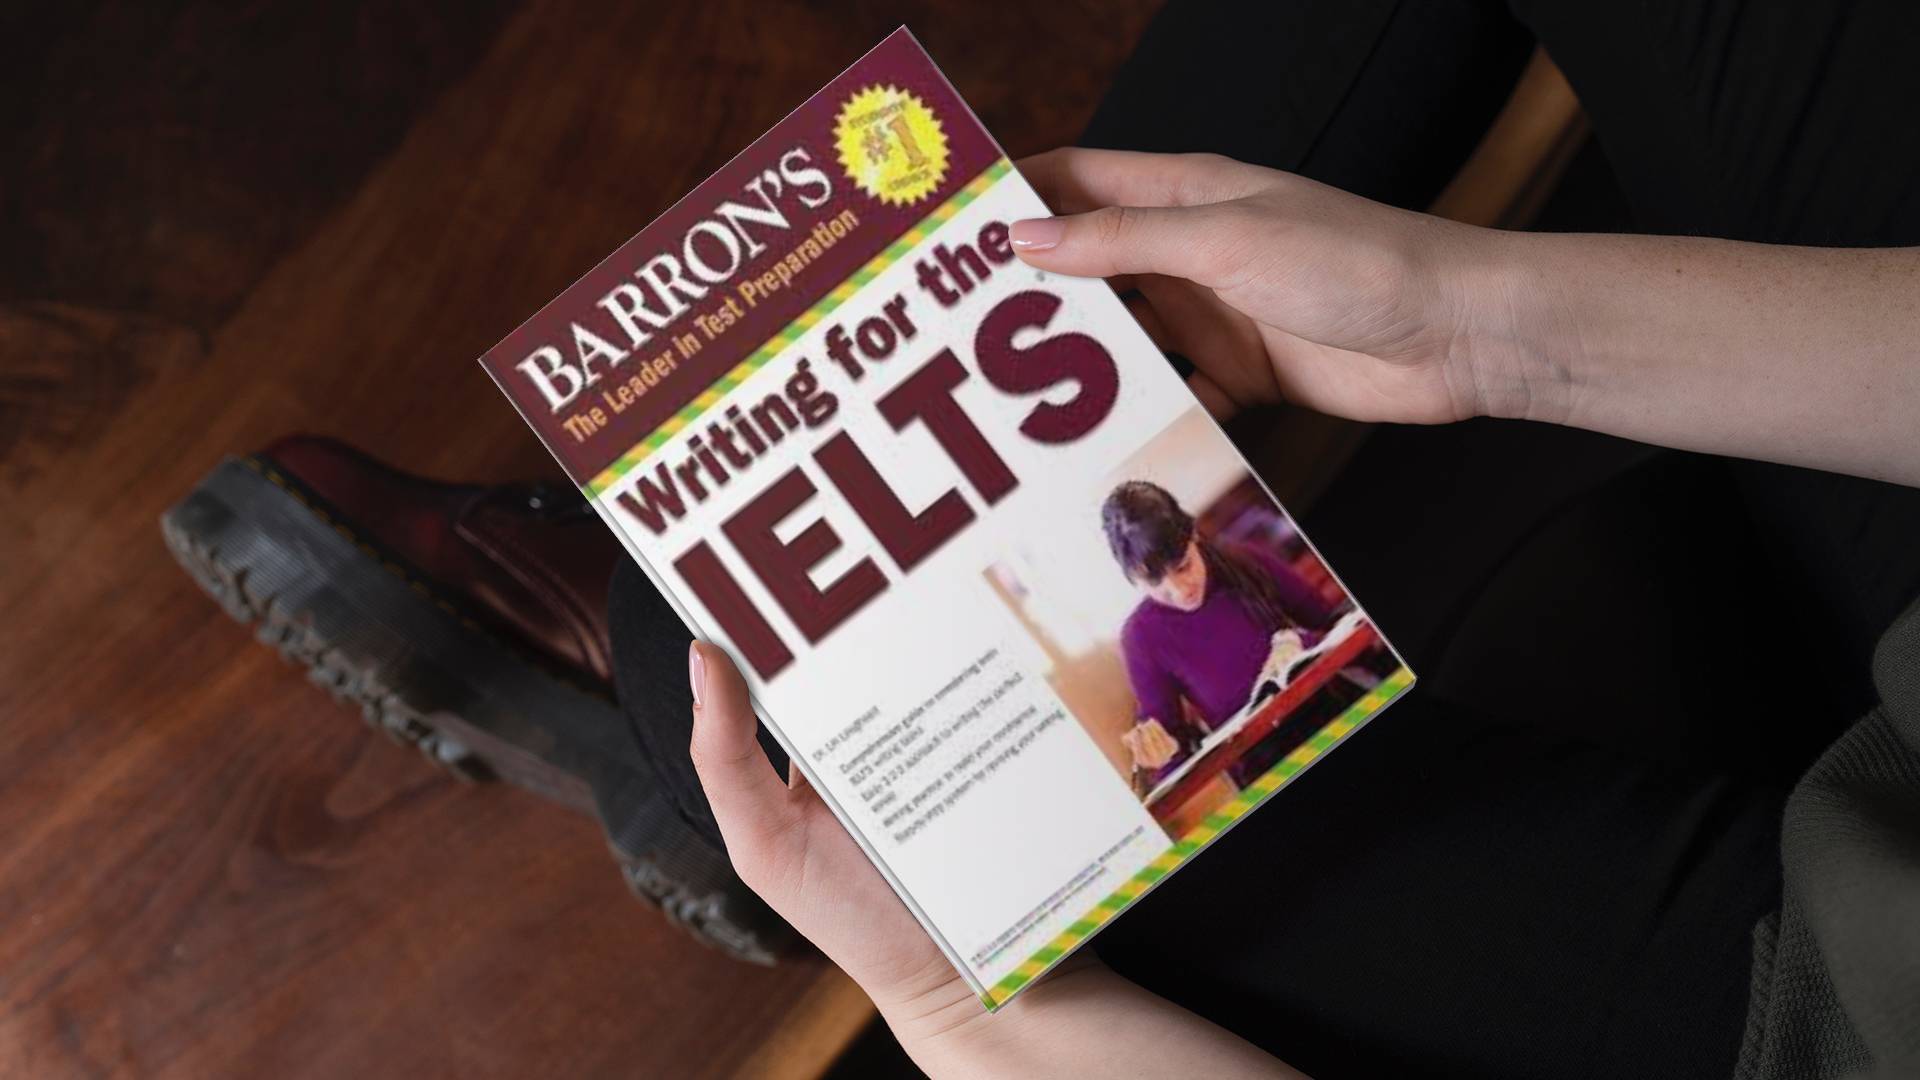 خرید کتاب زبان | فروشگاه اینترنتی کتاب زبان | Barrons Writing for the IELTS | بارونز رایتینگ فور آیلتس